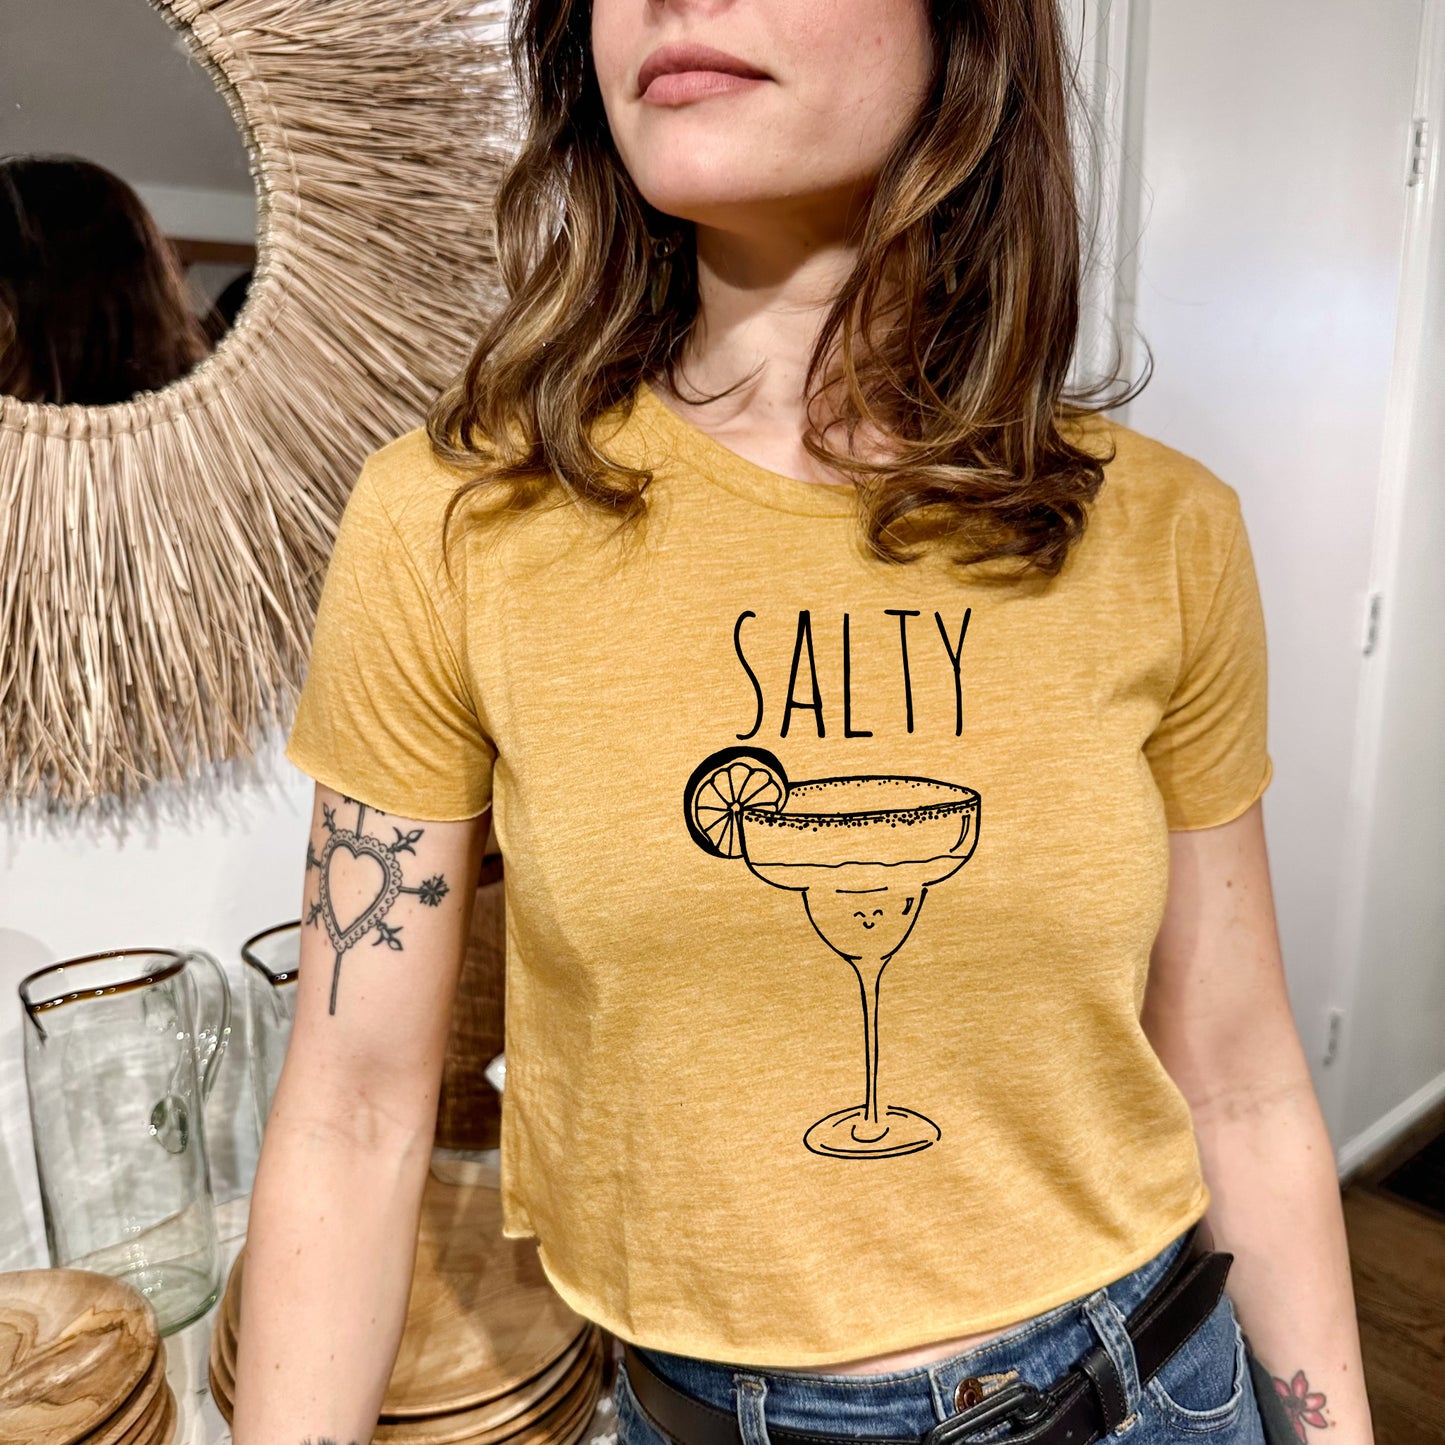 Salty (Margarita) - Women's Crop Tee - Heather Gray or Gold